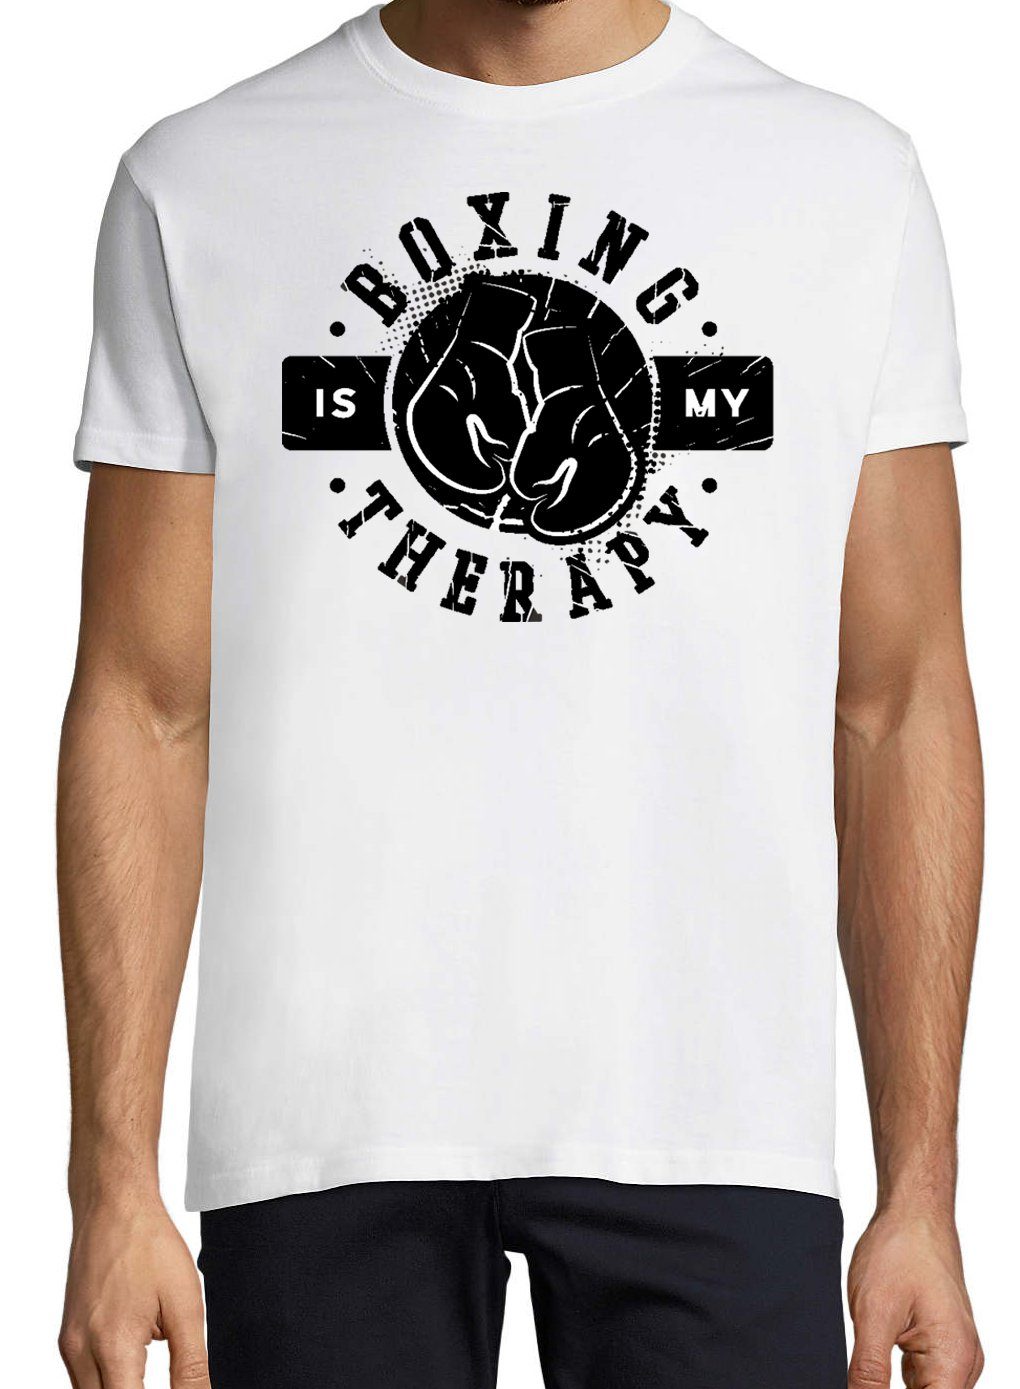 mit Youth Weiß My Frontprint Boxen Designz trendigem Is Shirt Therapie T-Shirt Herren